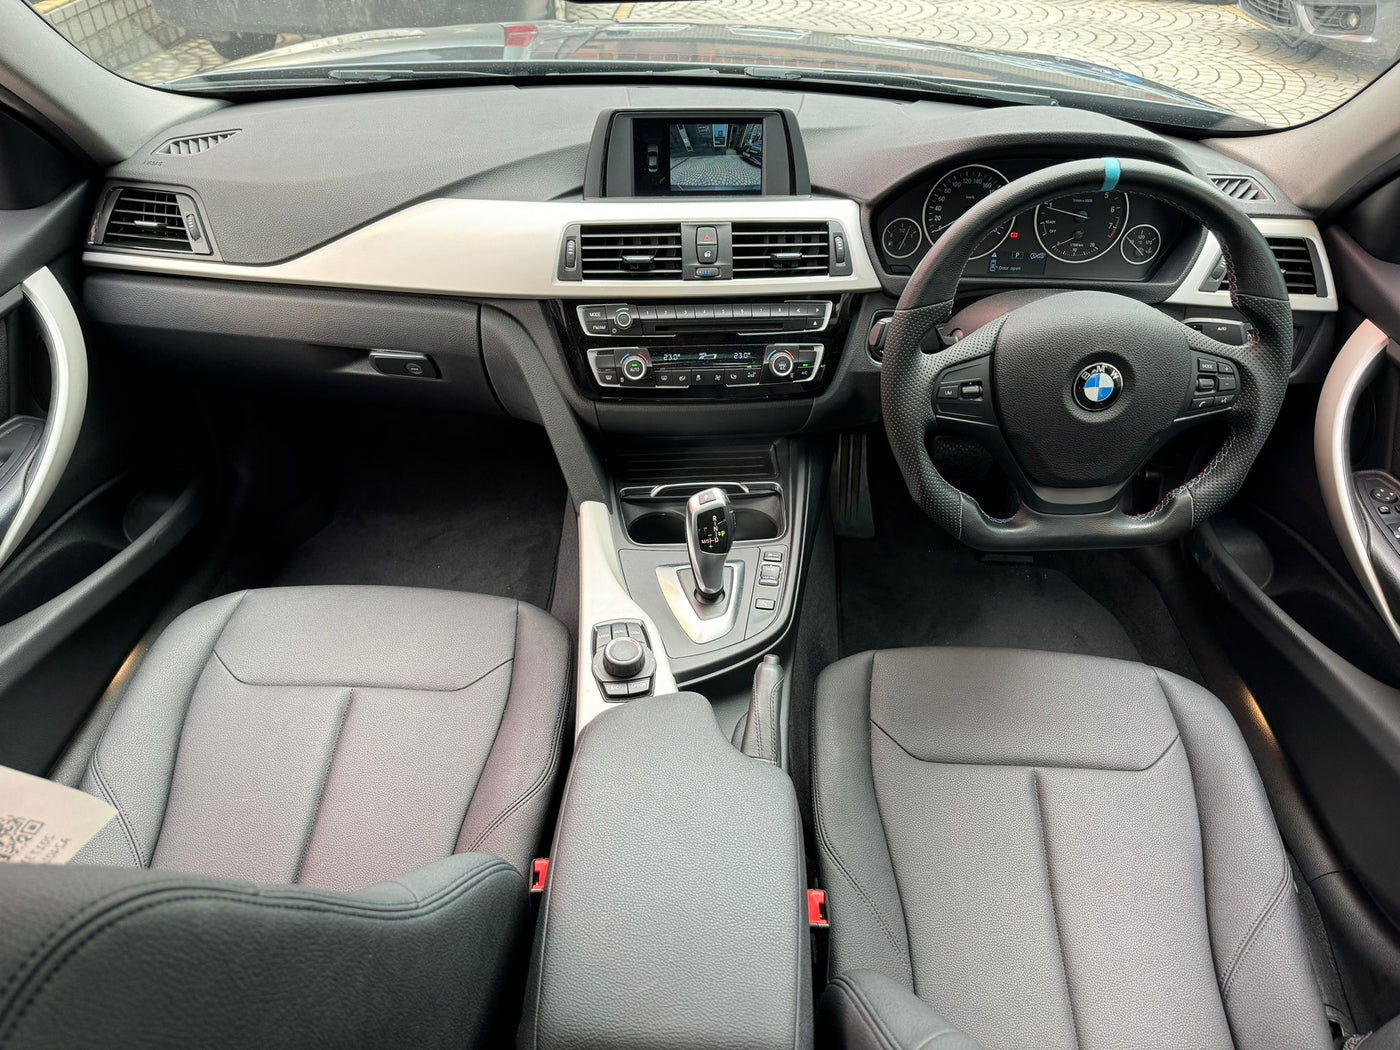 BMW 318i 2017